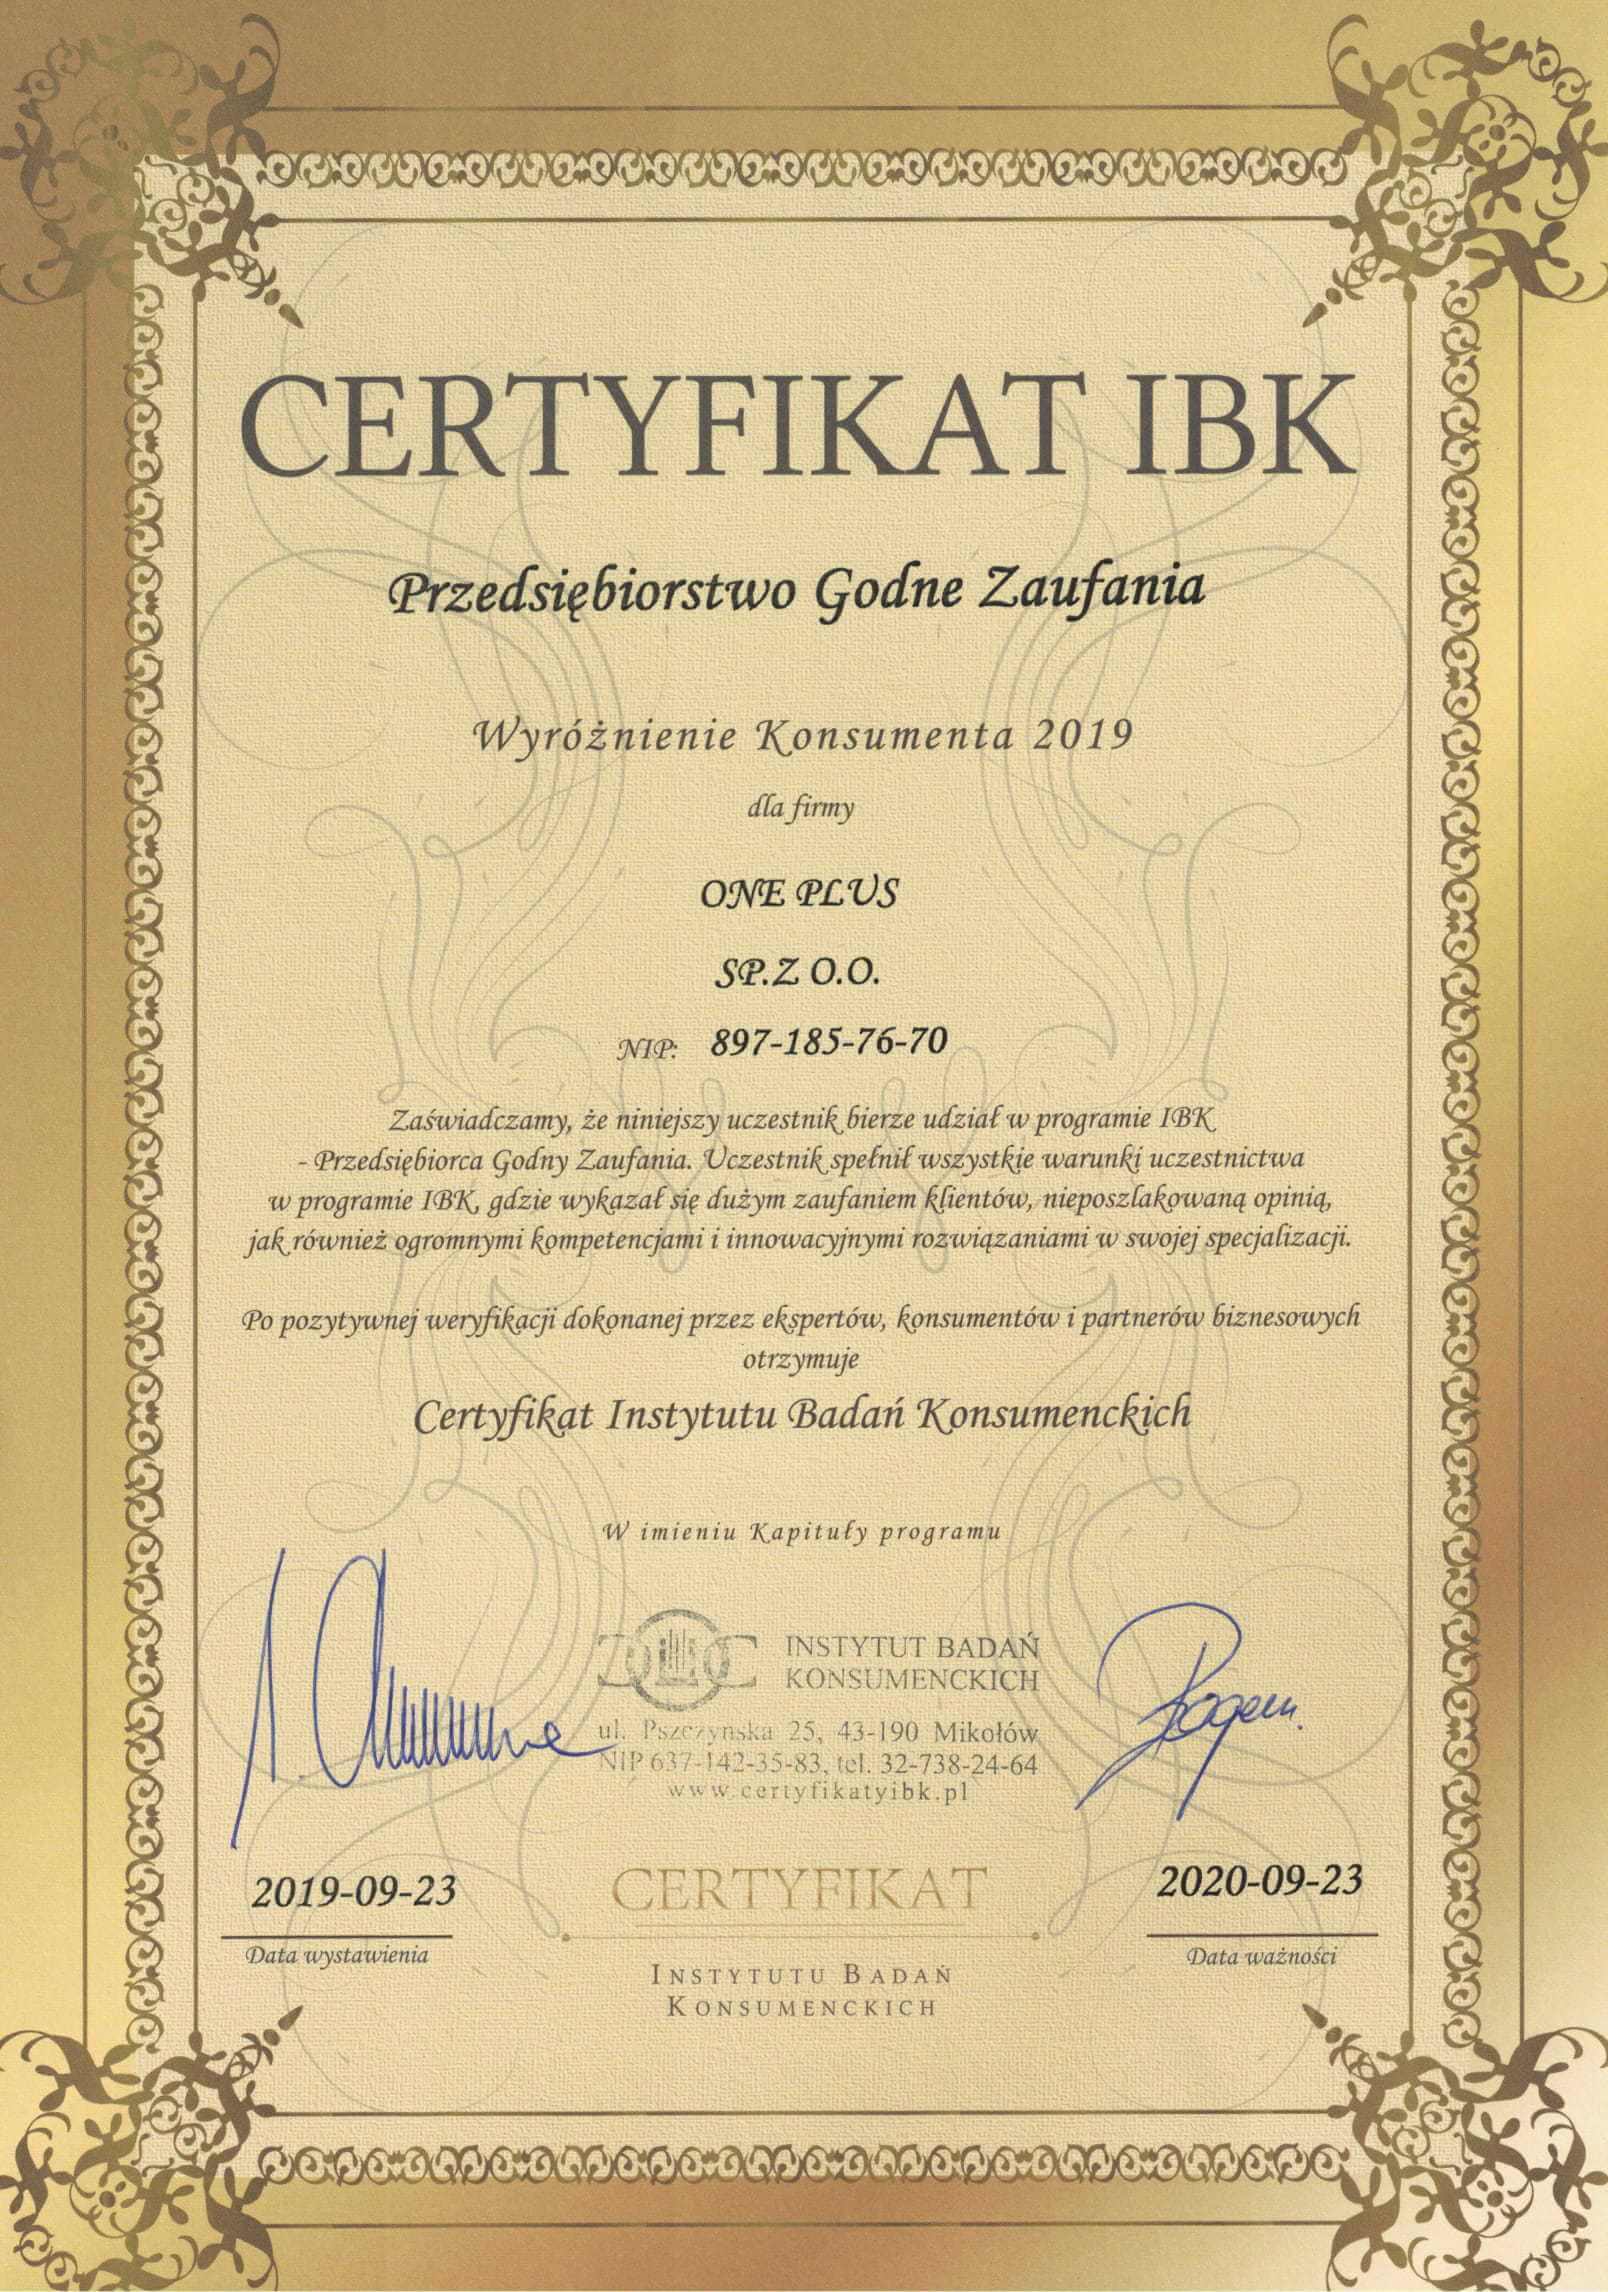 Certyfikat Agencji Pracy ONE PLUS Sp. z o.o.